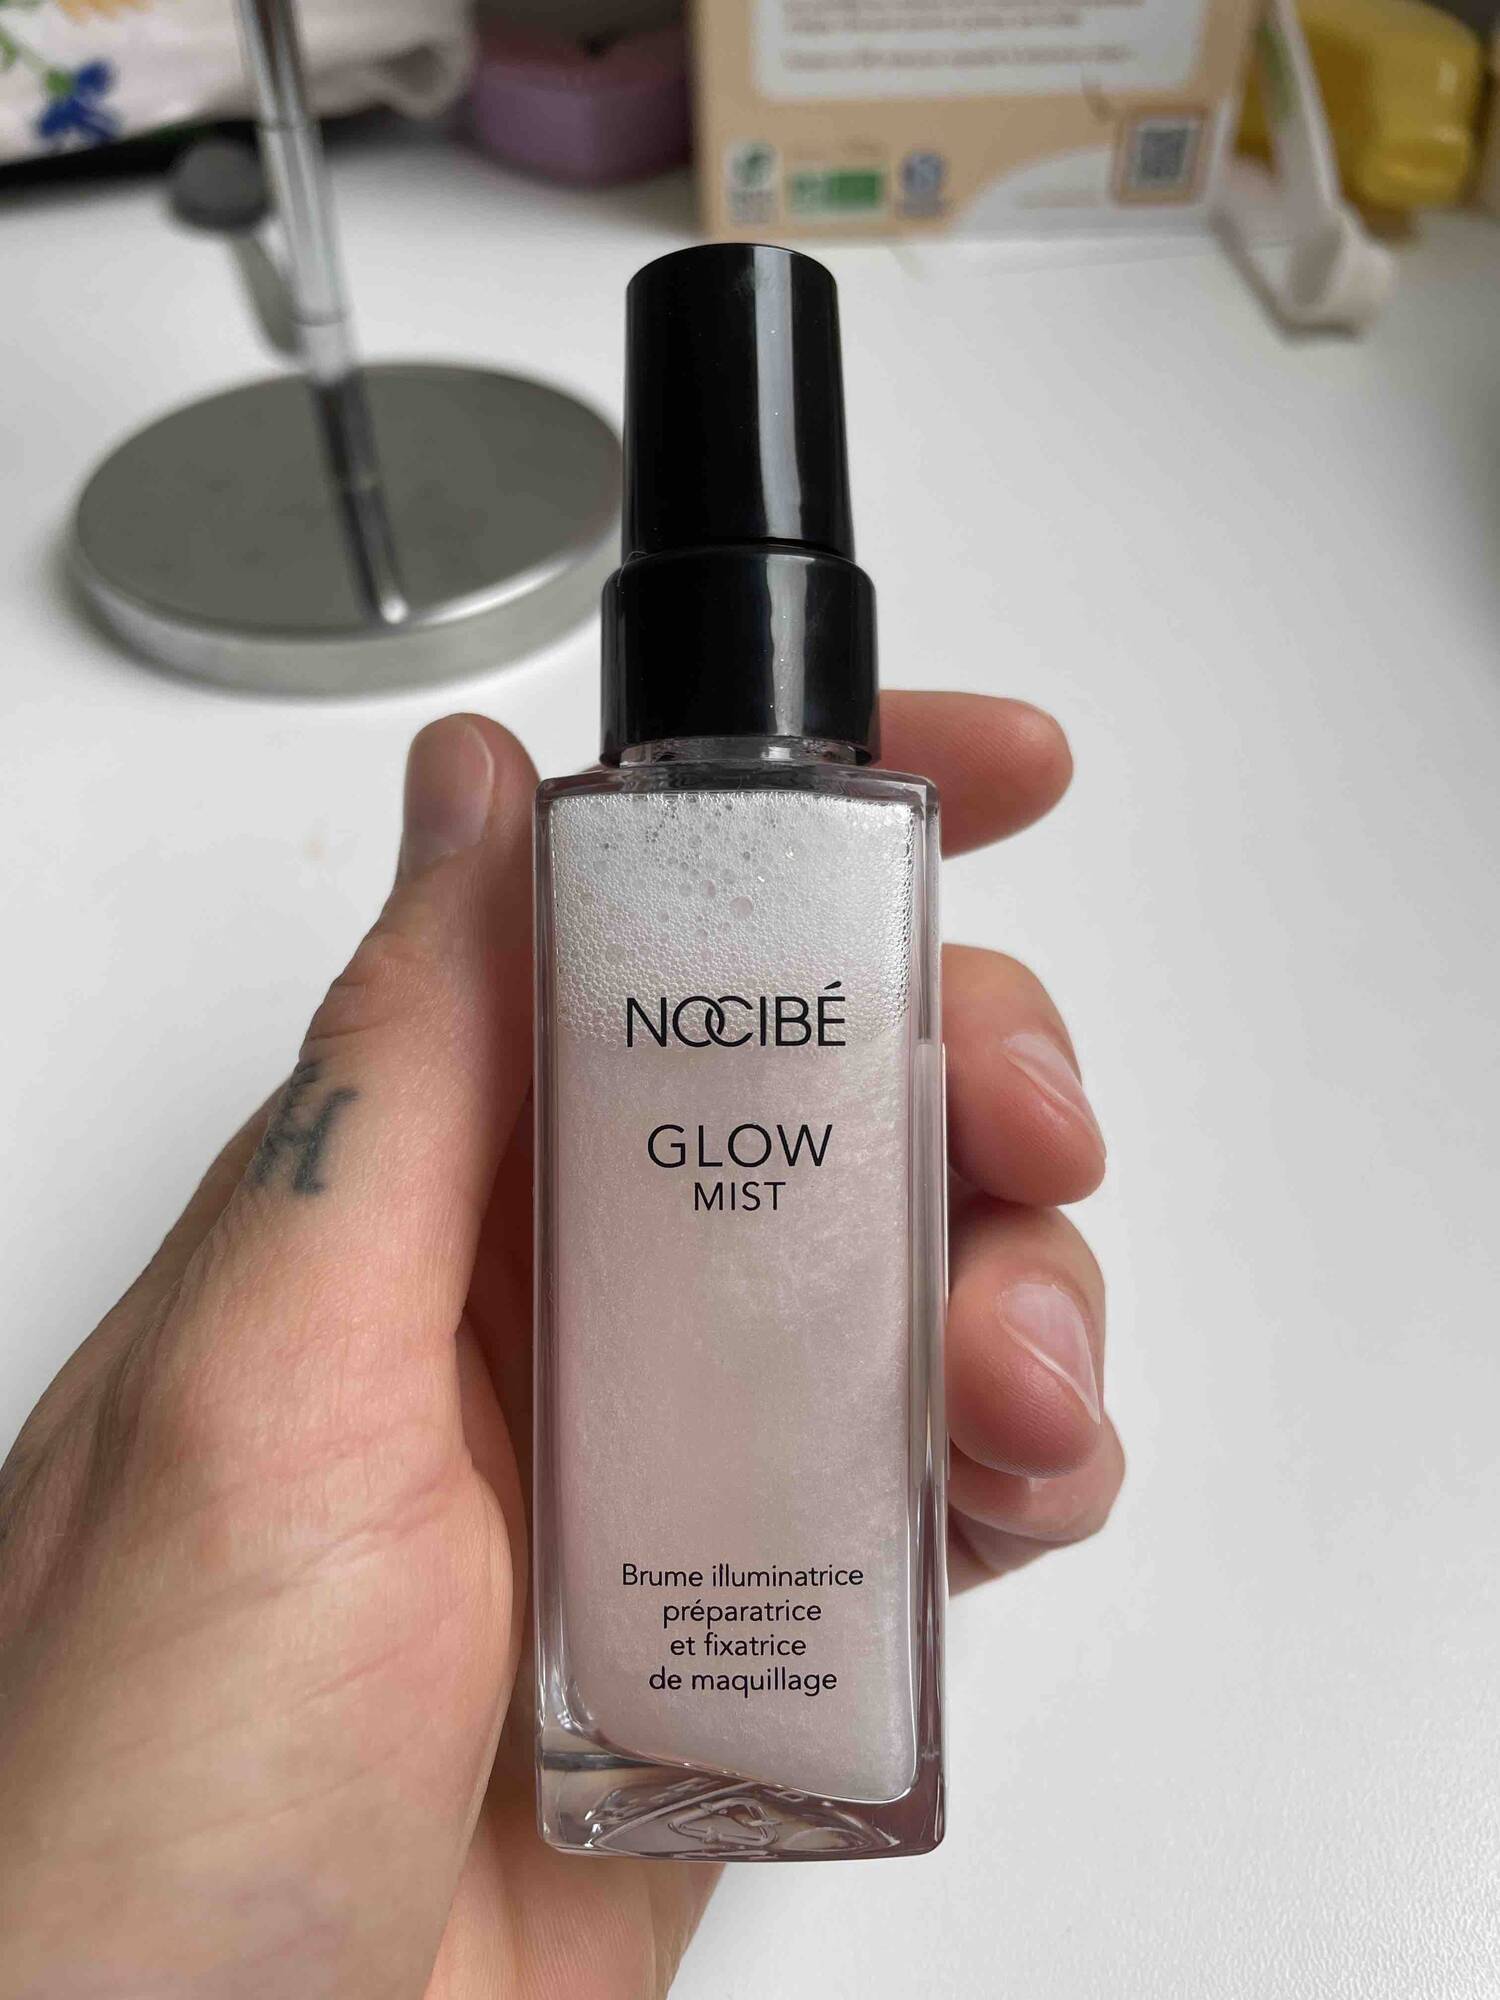 NOCIBÉ - Glow mist_fixatrice de maquillage